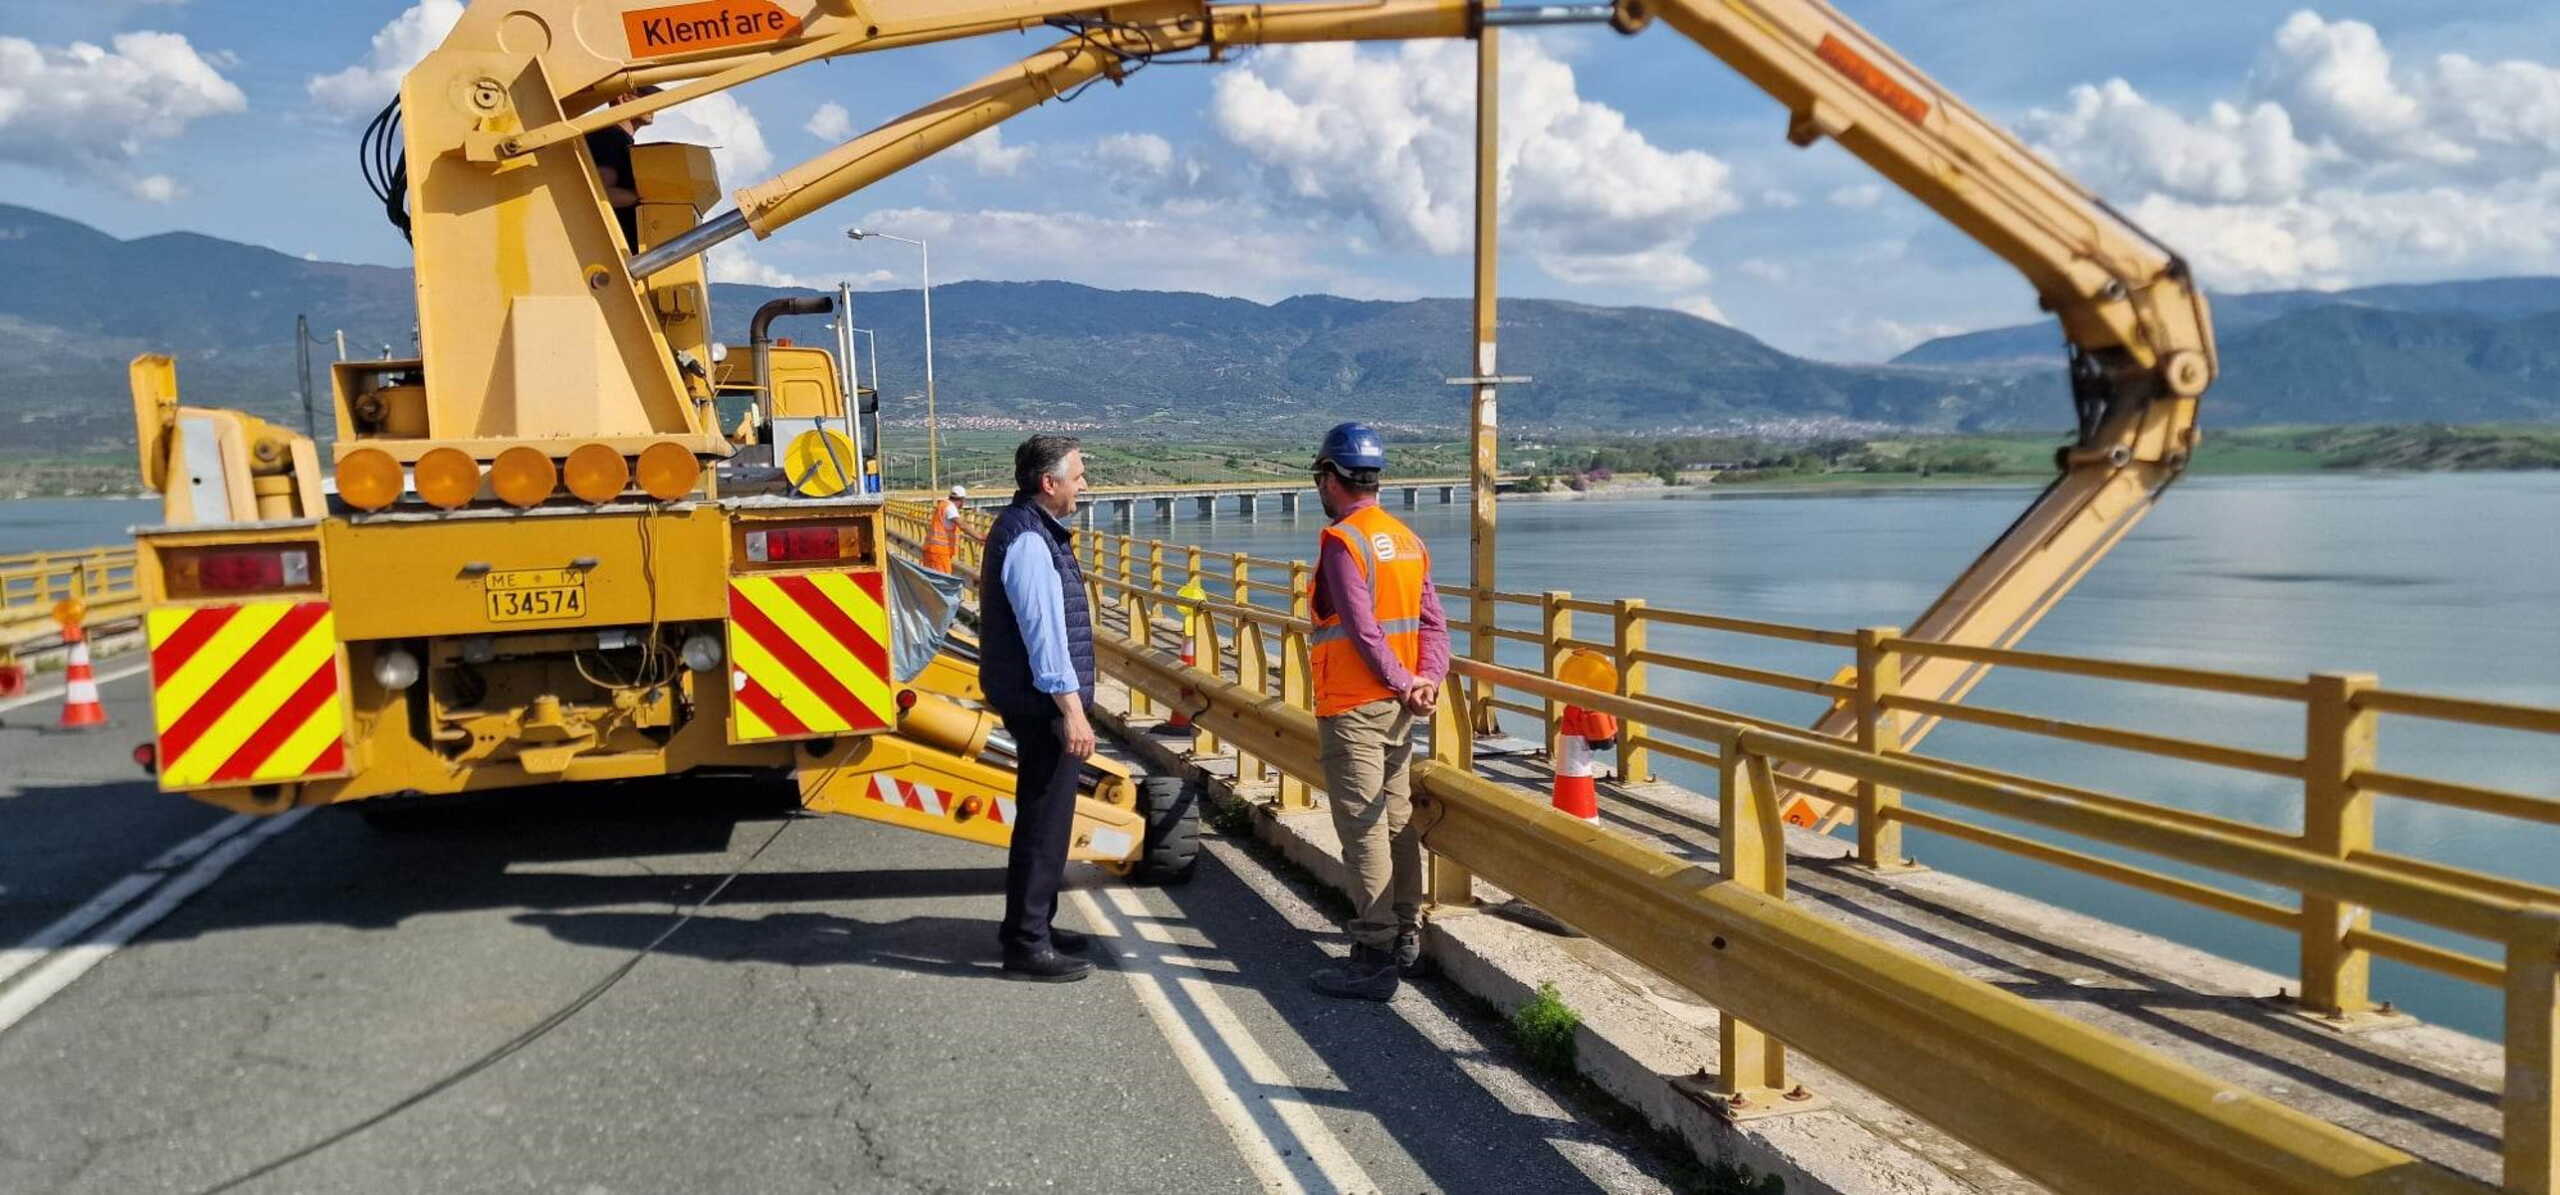 Bridge of Serbia: No fixed problem